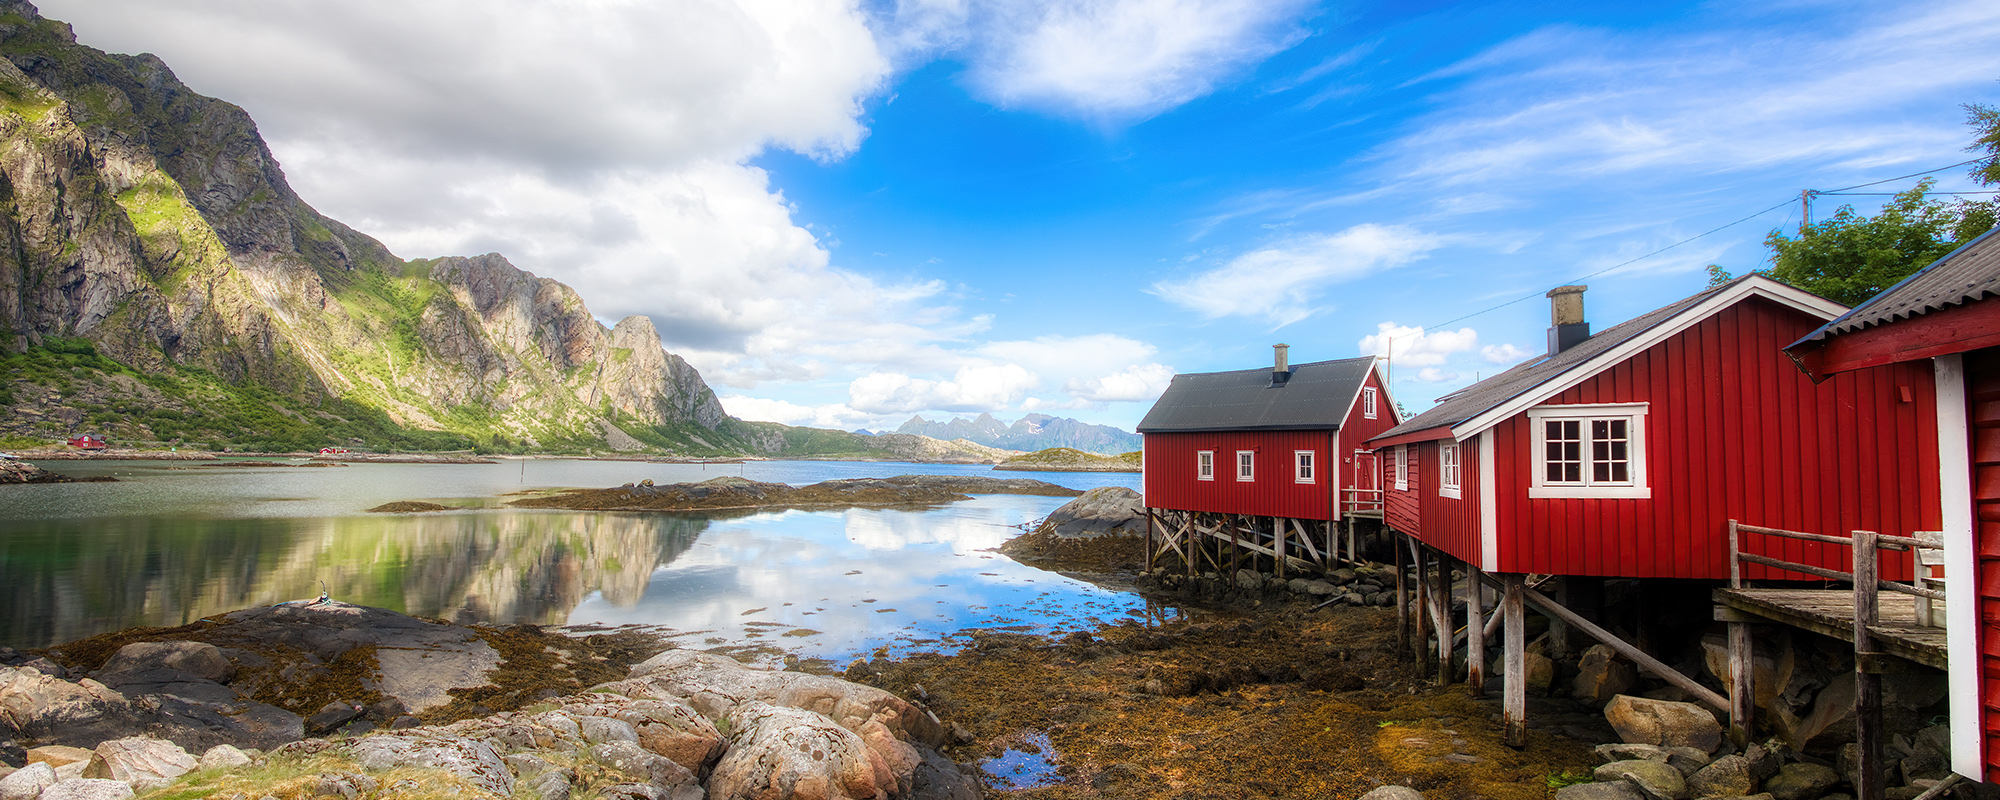 Norway Explored